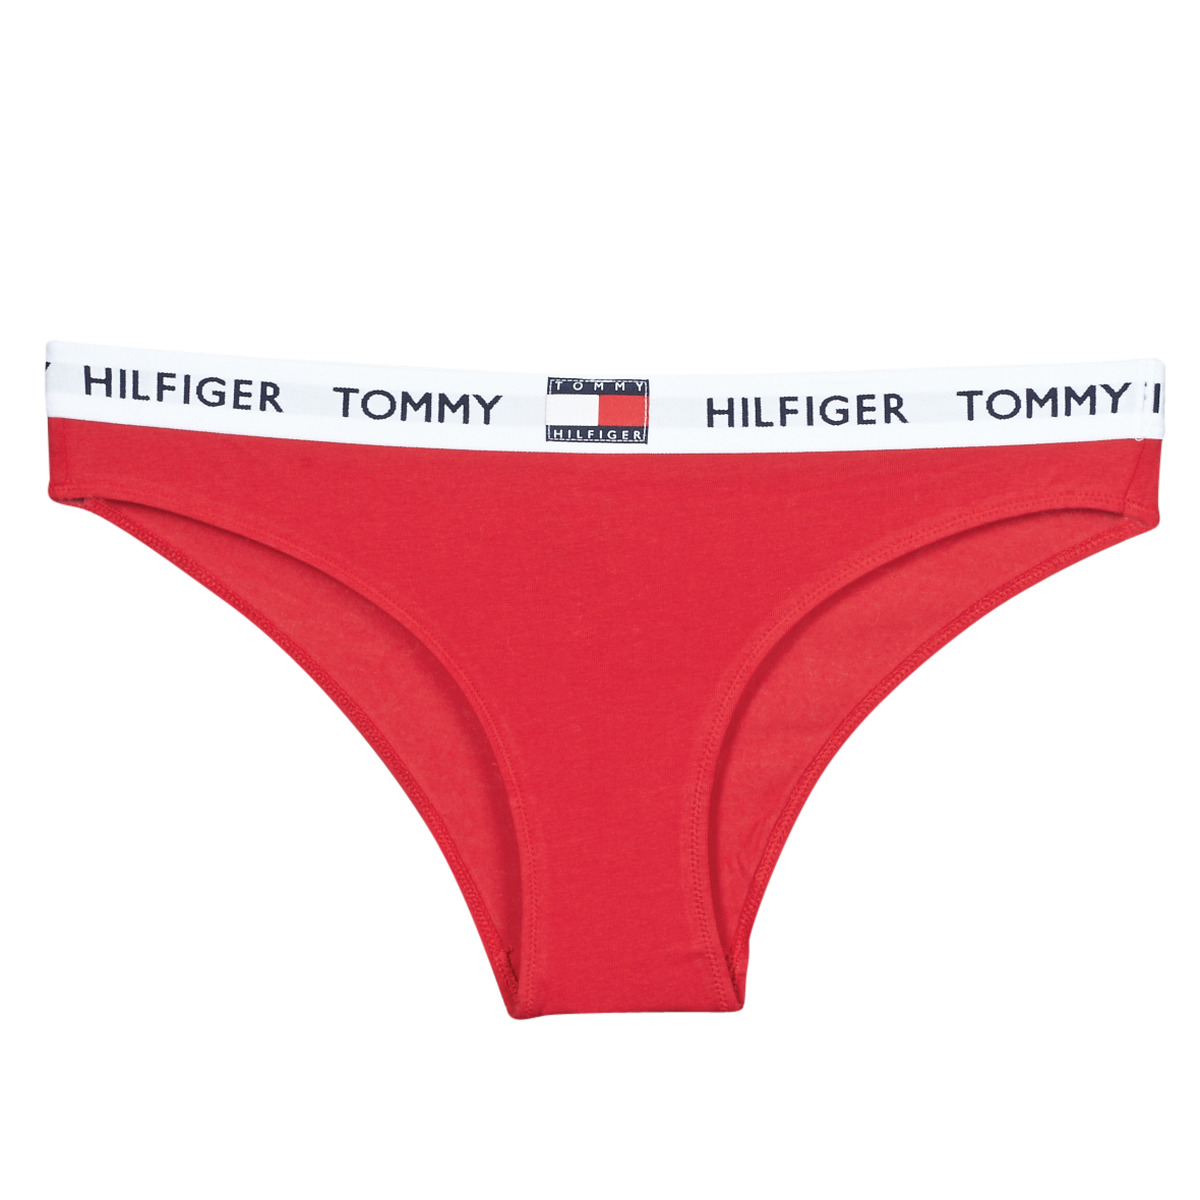 Tommy hilfiger, Knickers, Lingerie, Women